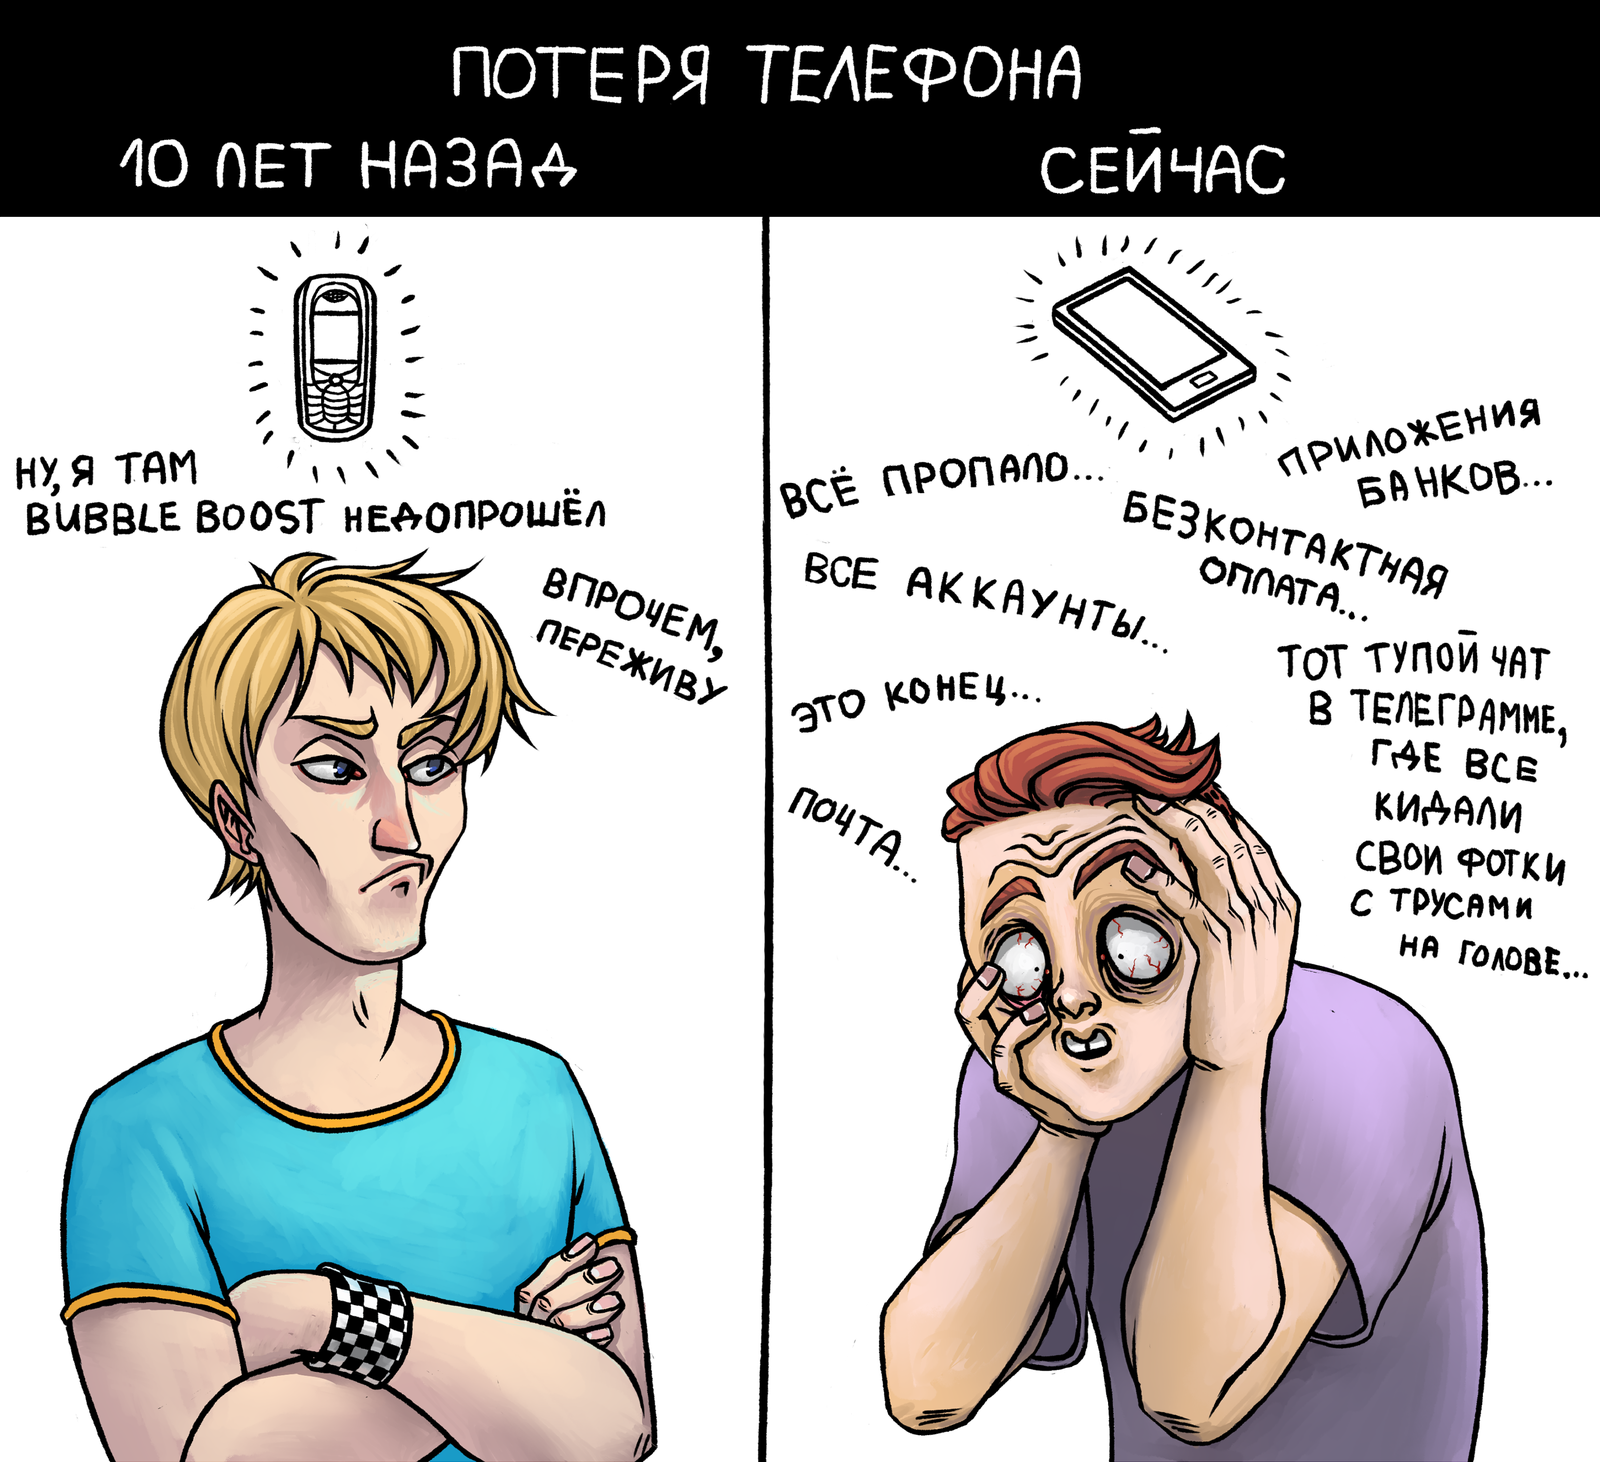 Telephone - My, , Mobile phones, Stupidity